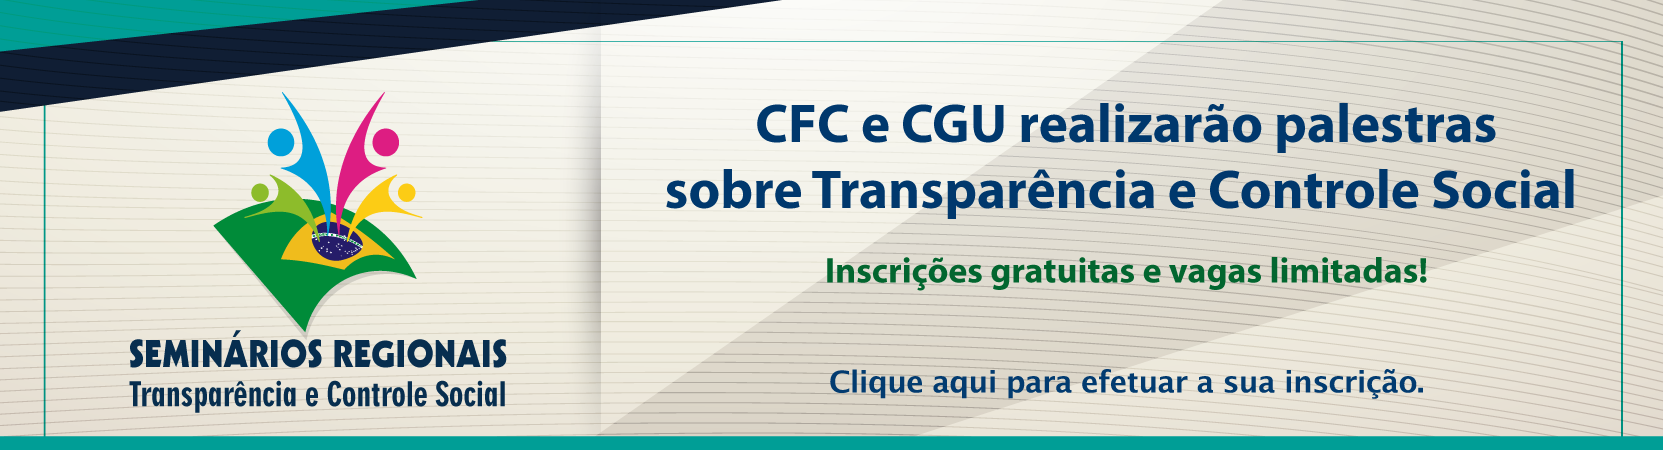 Faça sua inscrição para as palestras da CFC e CGU